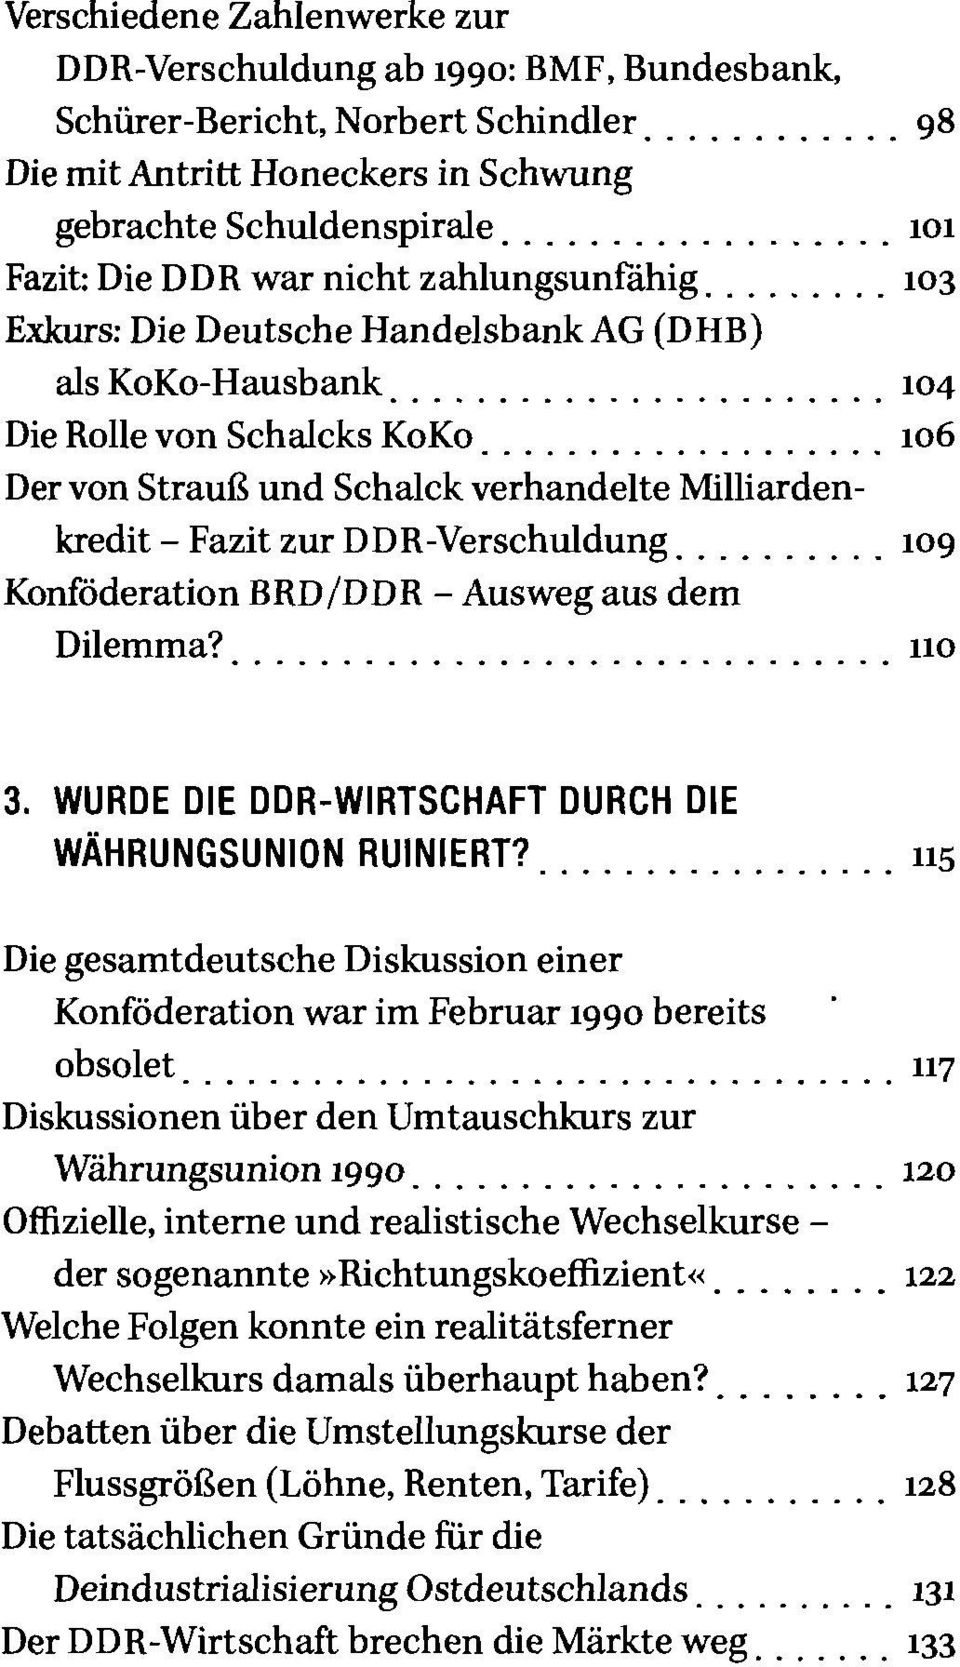 .................. 106 Der von Strauß und Schalck verhandelte Milliardenkredit - Fazit zur DDR-Verschuldung 109 Konföderation BRD/DDR - Ausweg aus dem Dilemma? uo 3.